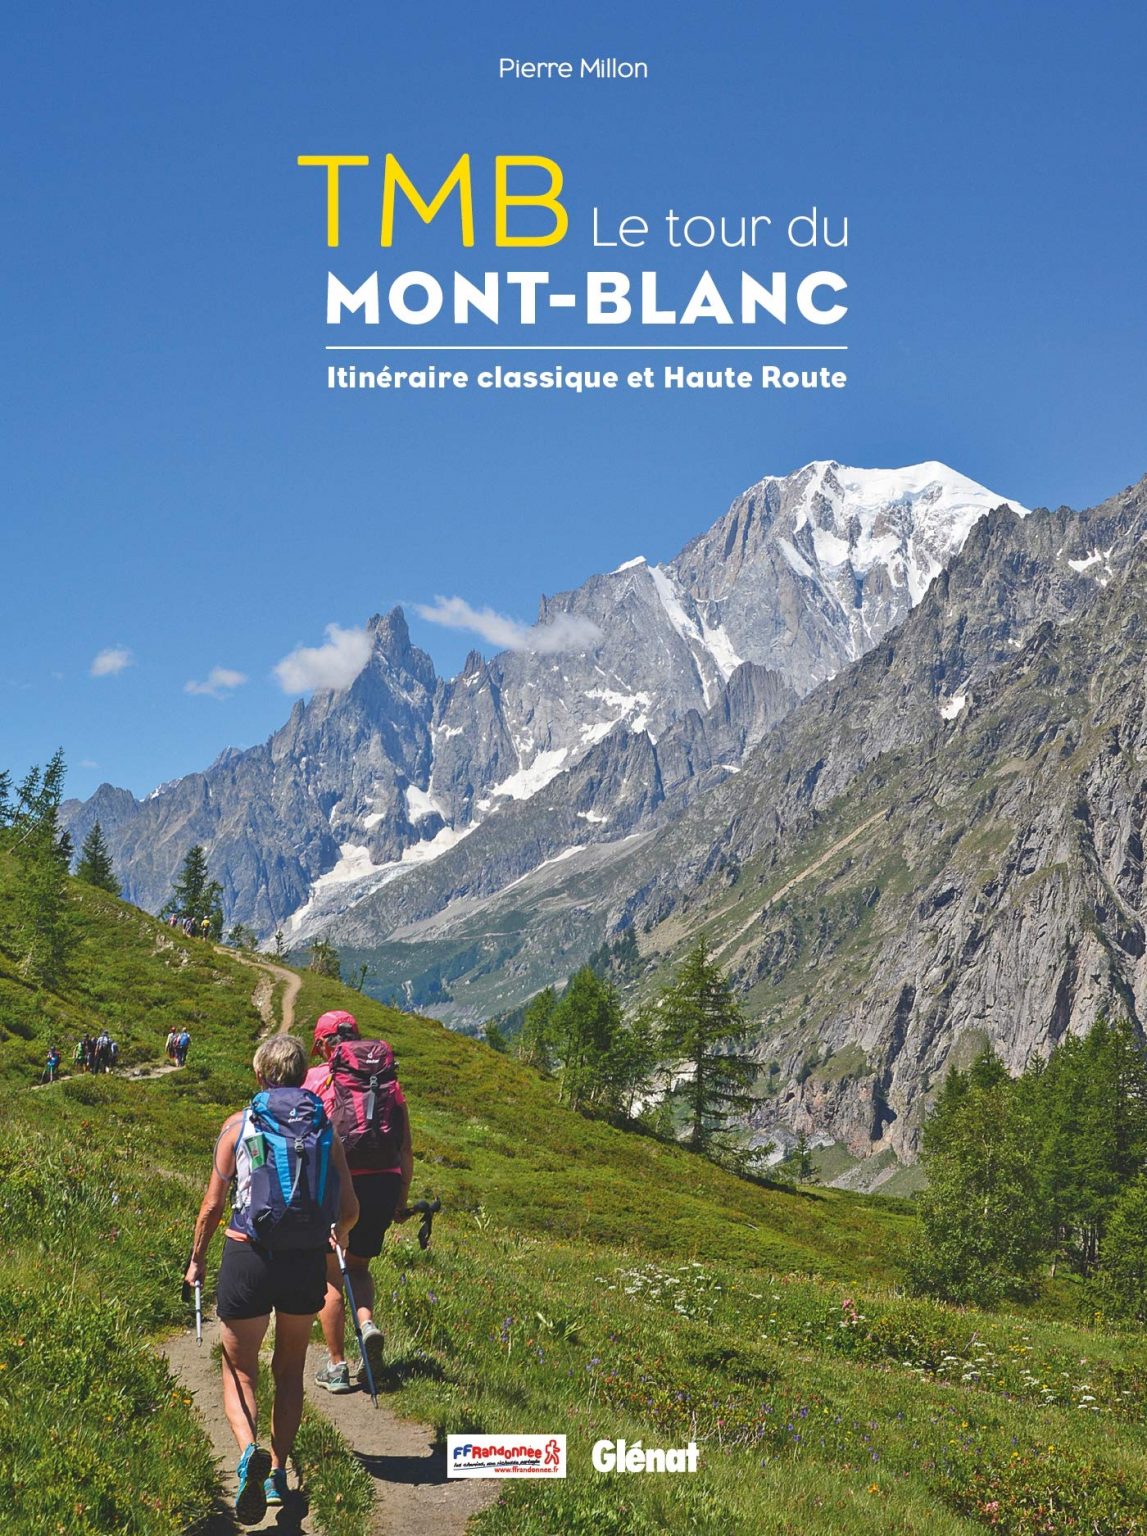 Le Tour du MontBlanc itinéraire classique et hauteroute